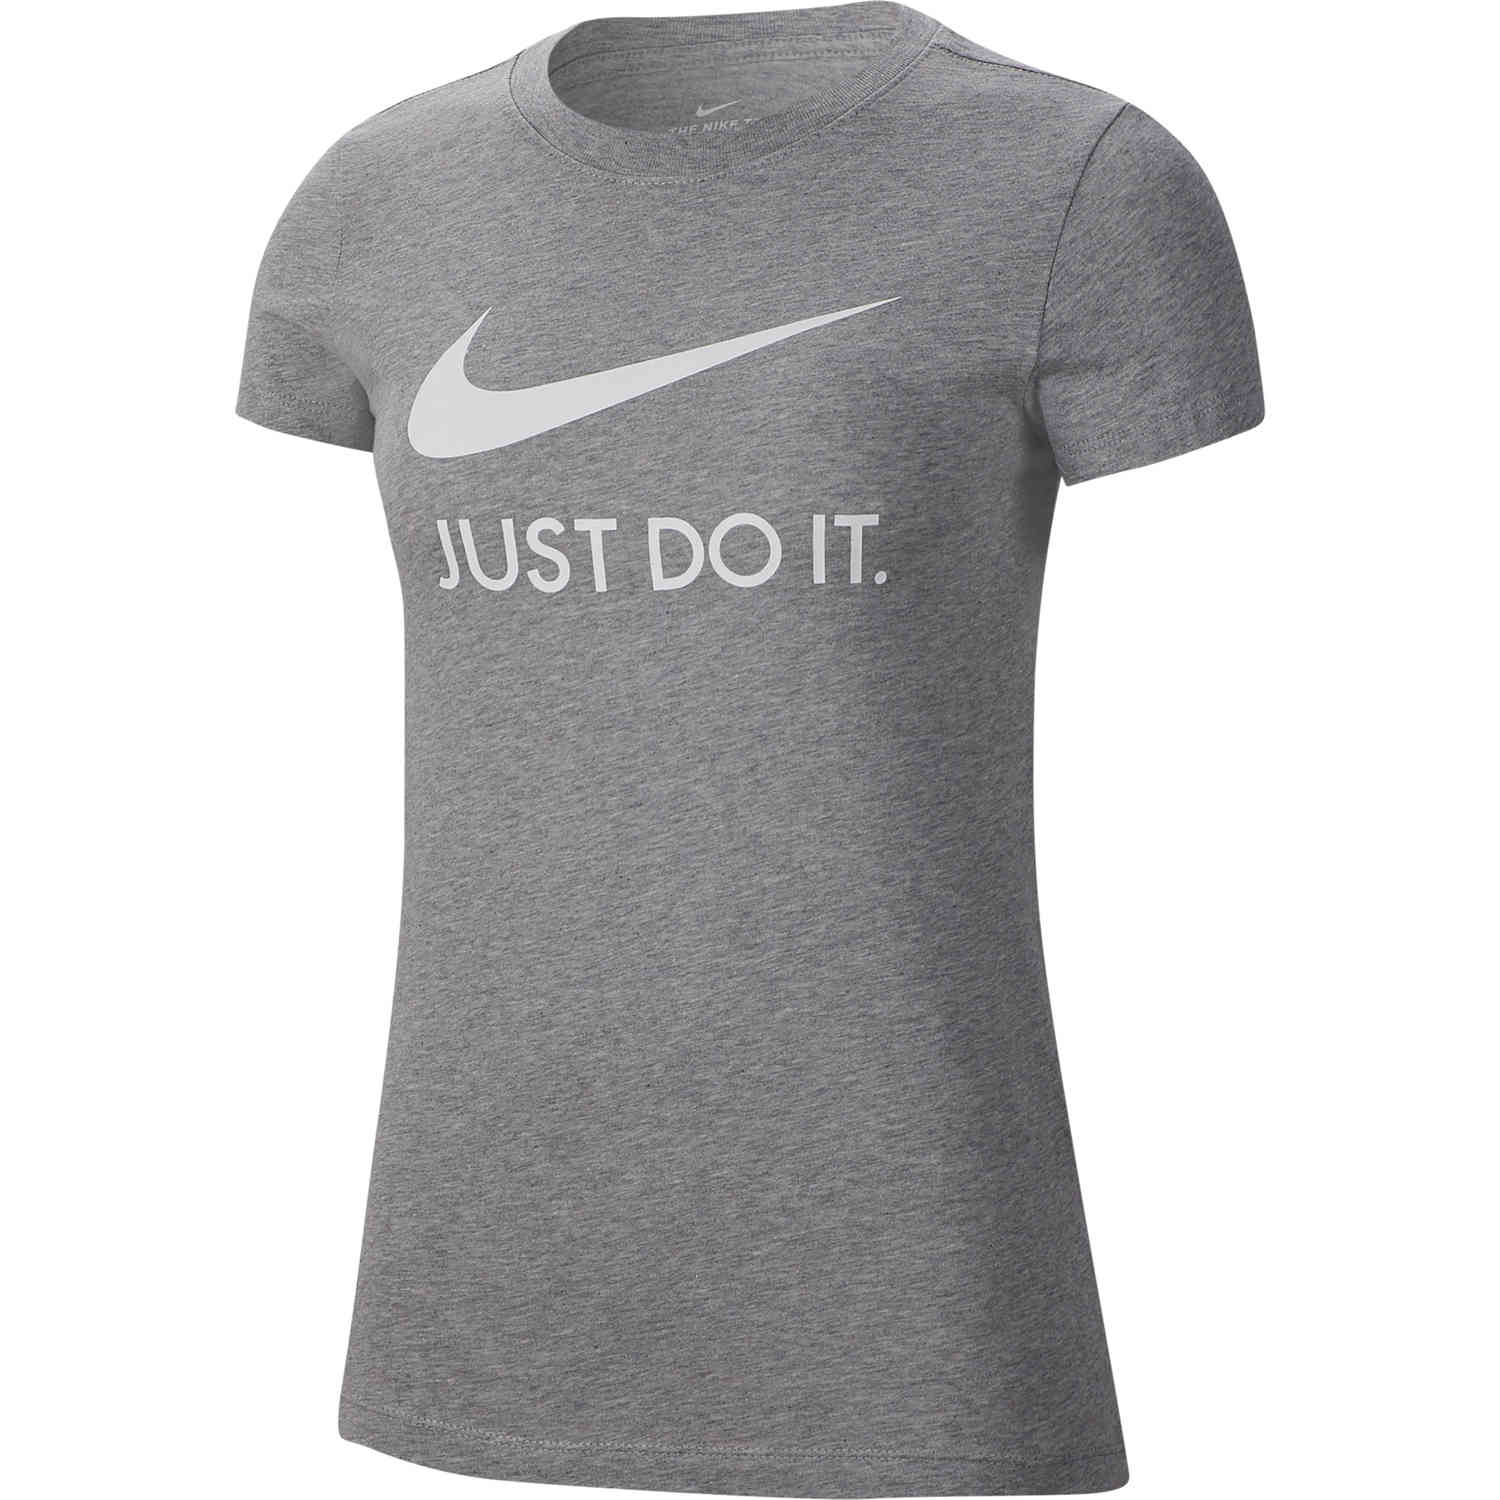 just do it nike shirt women's